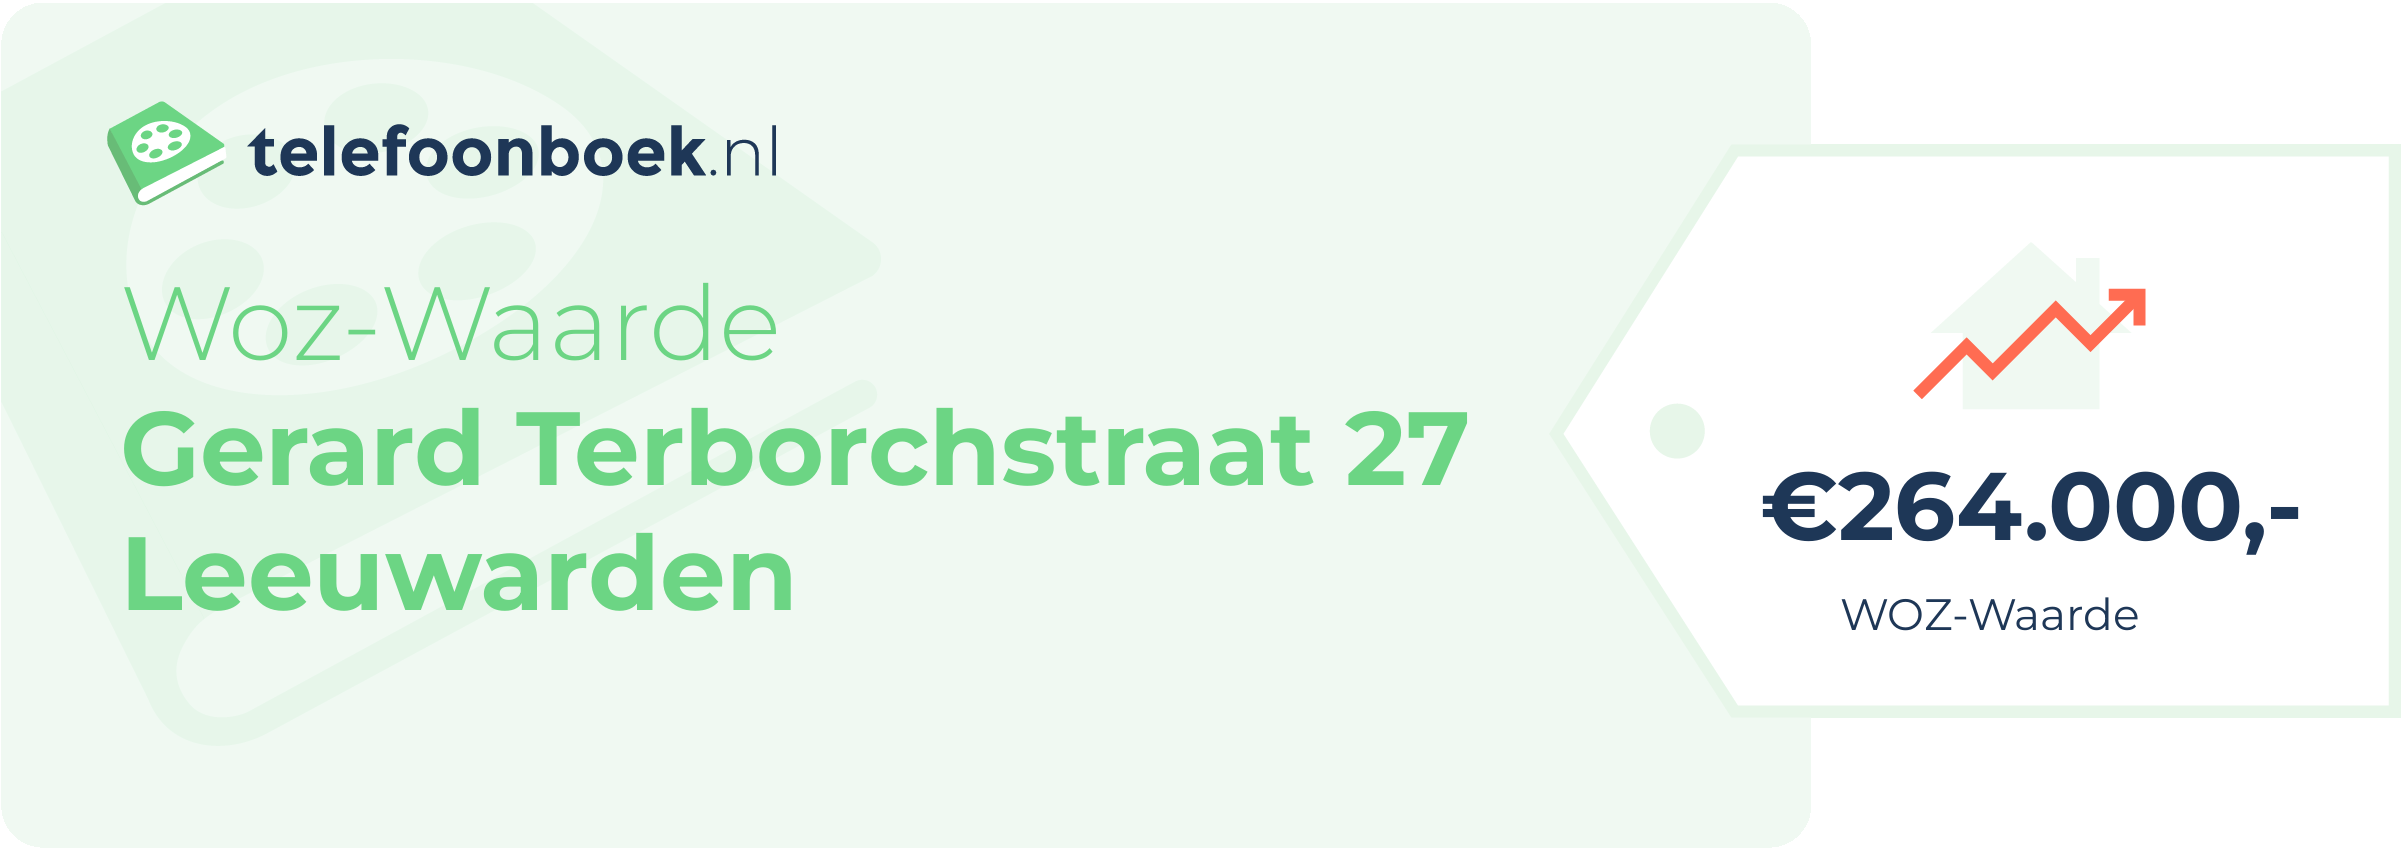 WOZ-waarde Gerard Terborchstraat 27 Leeuwarden